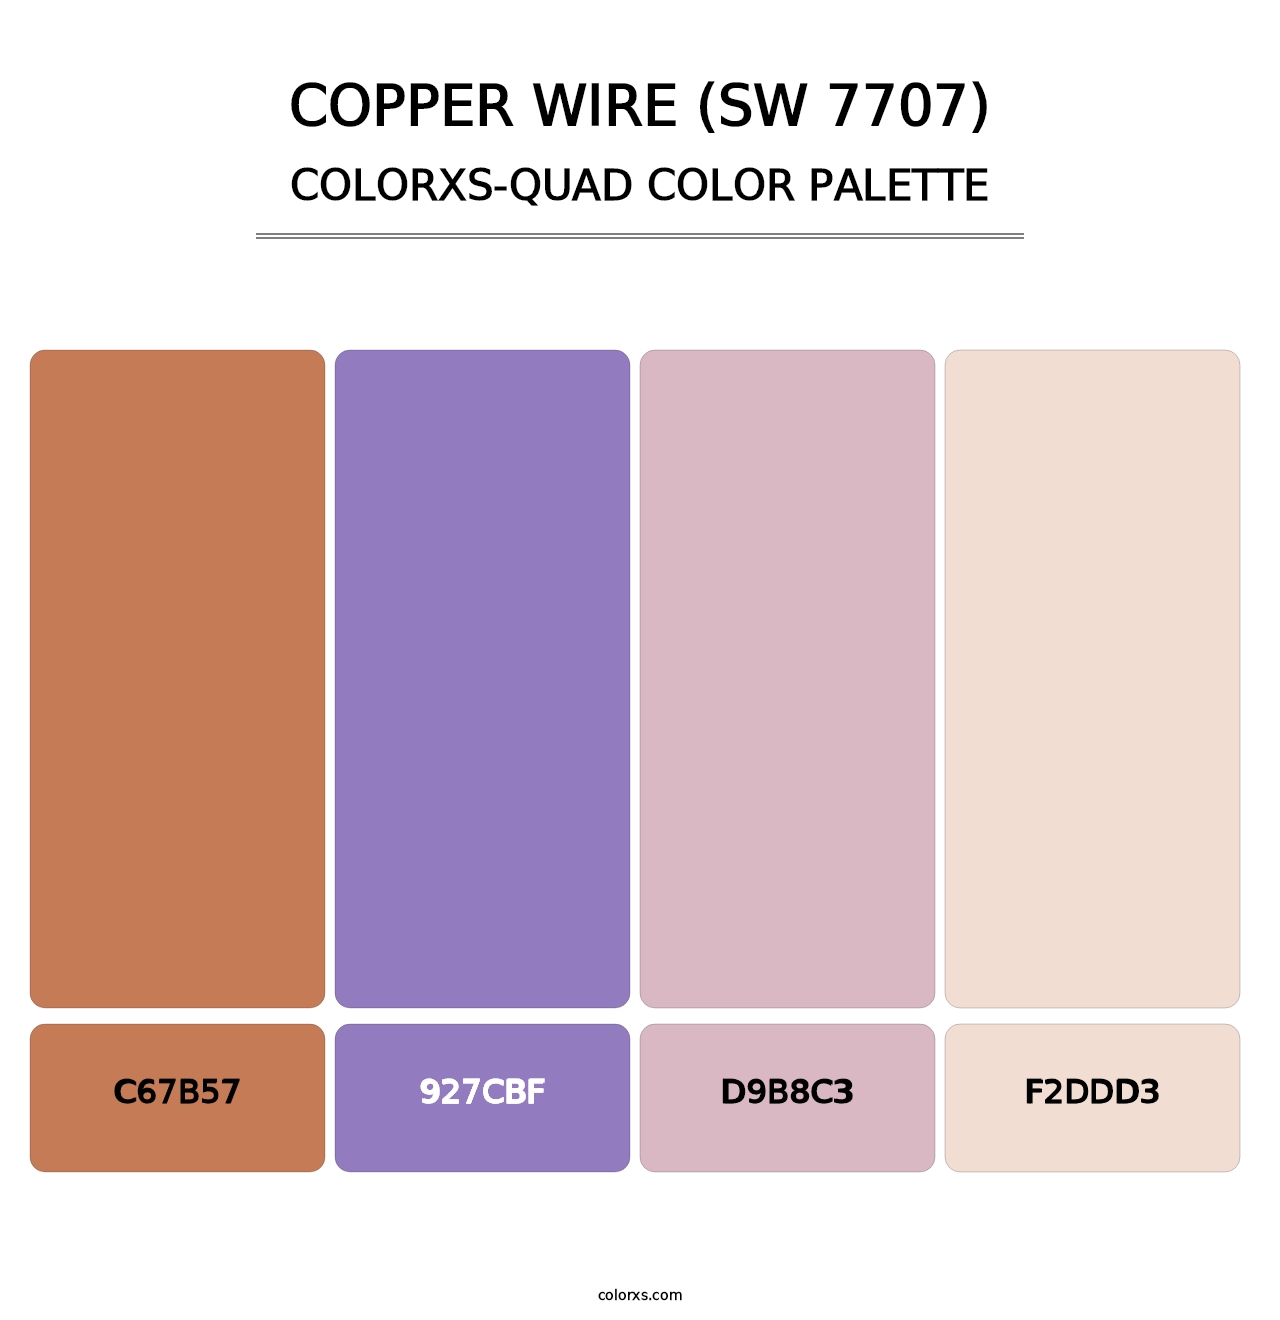 Copper Wire (SW 7707) - Colorxs Quad Palette